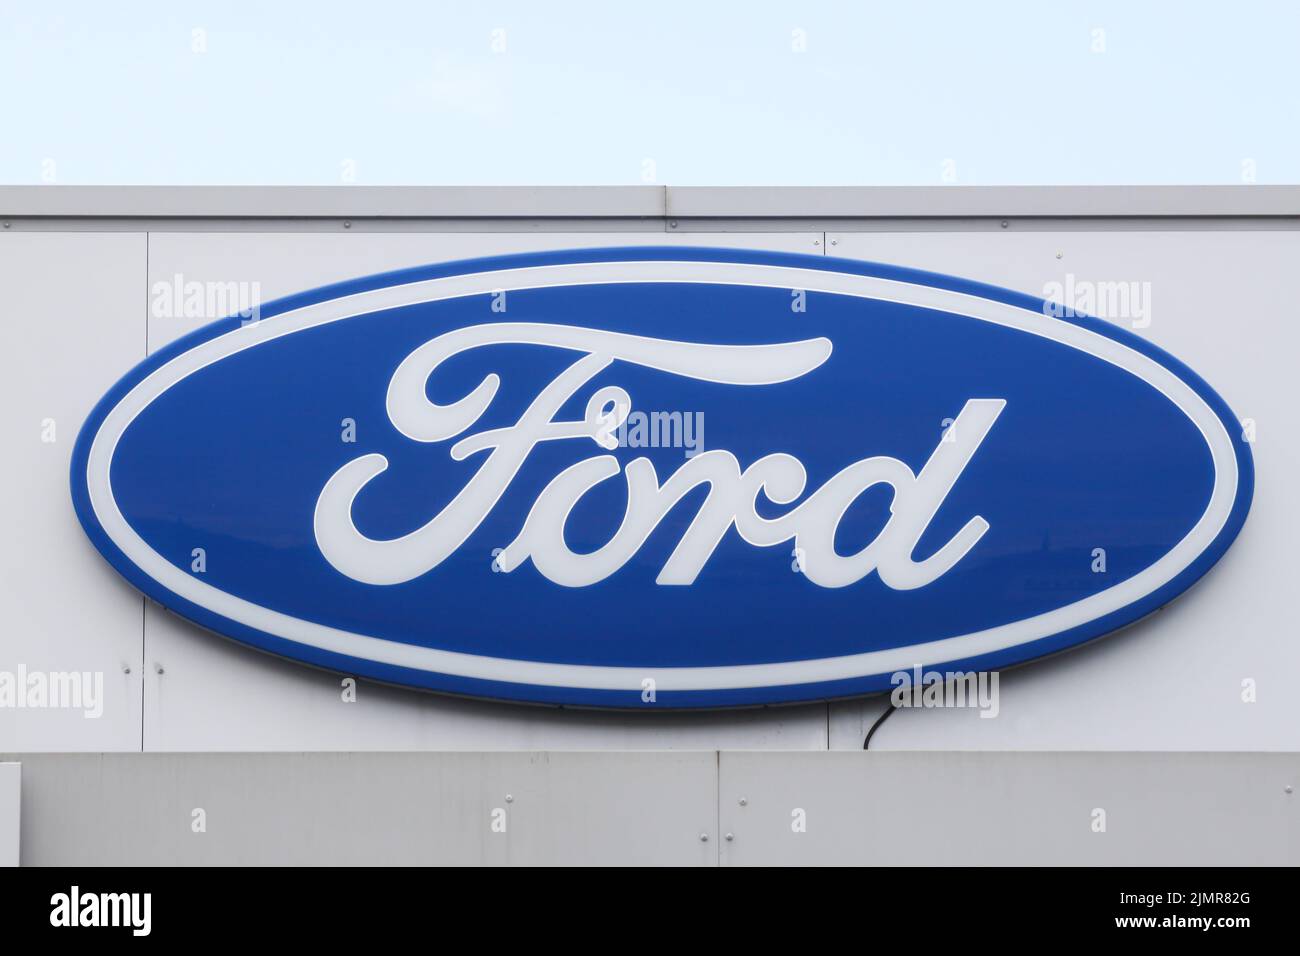 Villefranche, Francia - 20 de mayo de 2015: Logotipo de Ford en una pared. Ford es un fabricante de automóviles multinacional estadounidense con sede en Dearborn, Michigan, EE.UU Foto de stock